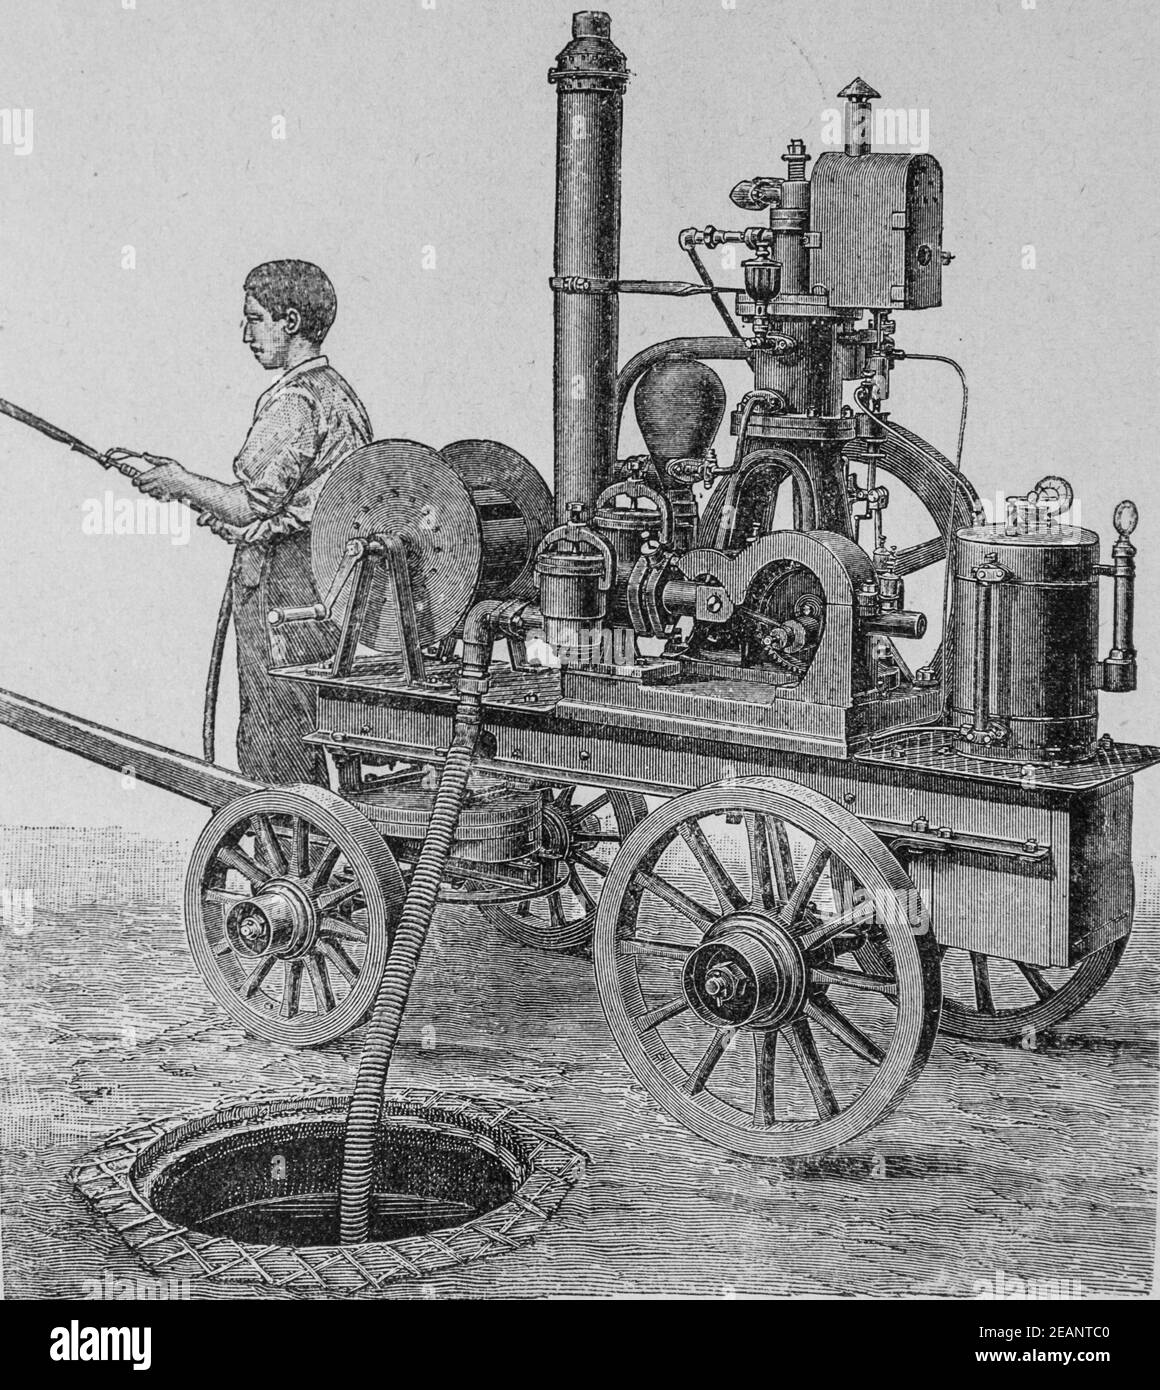 moteur pompe grob, le mecanicien moderne,editeur librairie commerciale,1890 Stockfoto